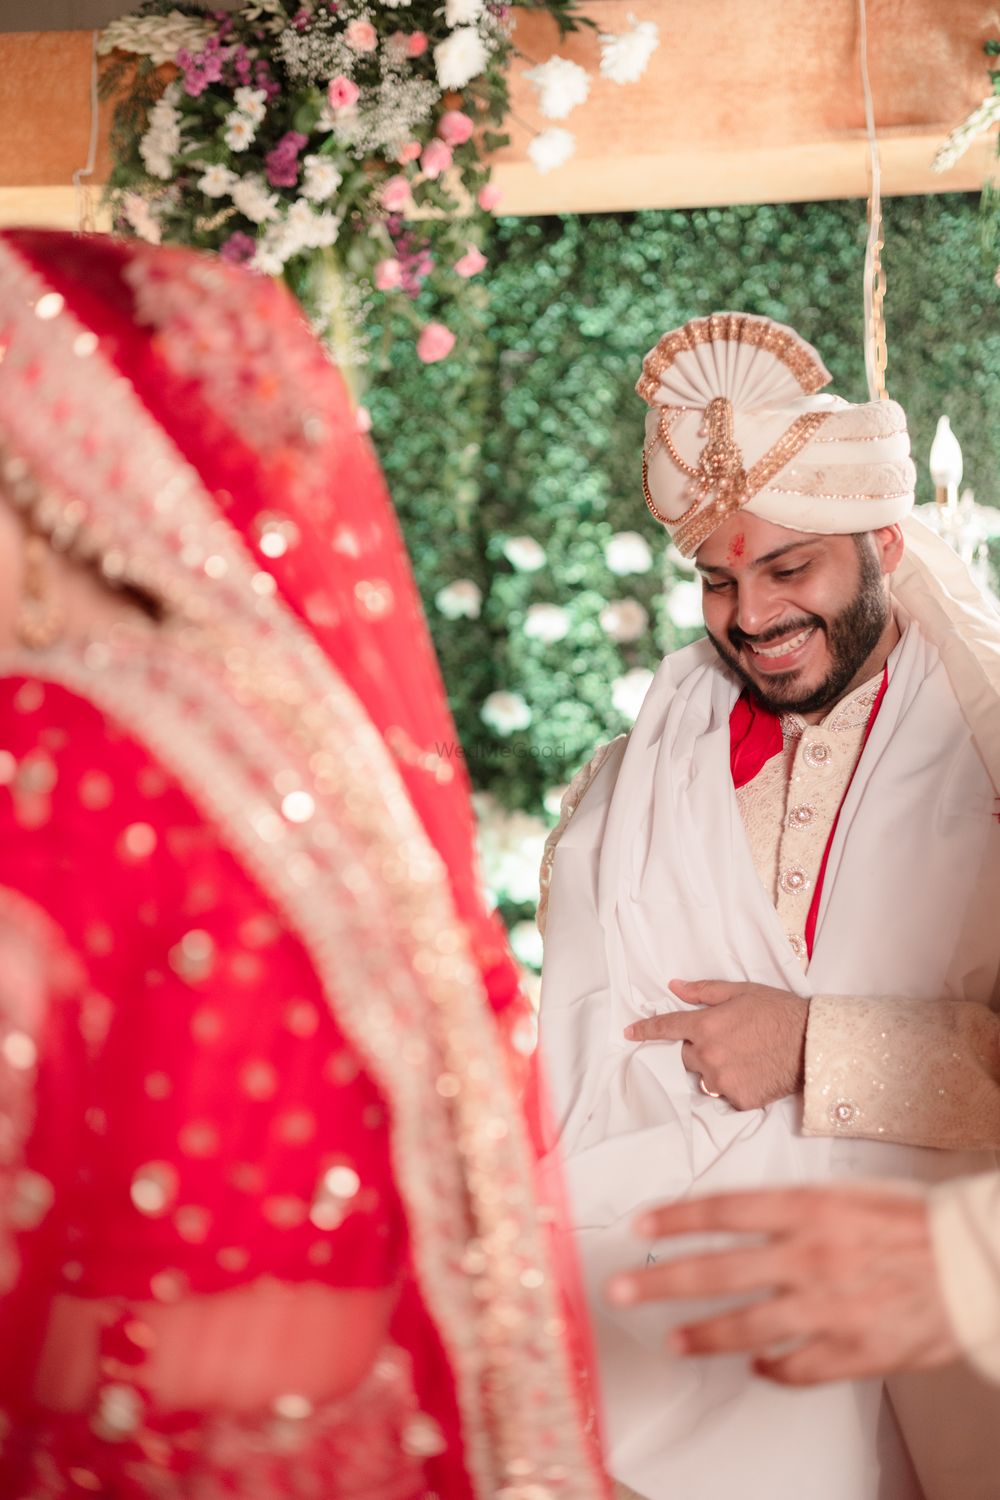 Photo From Shravani Ajay Wedding - By Yogi Zaveri Photography